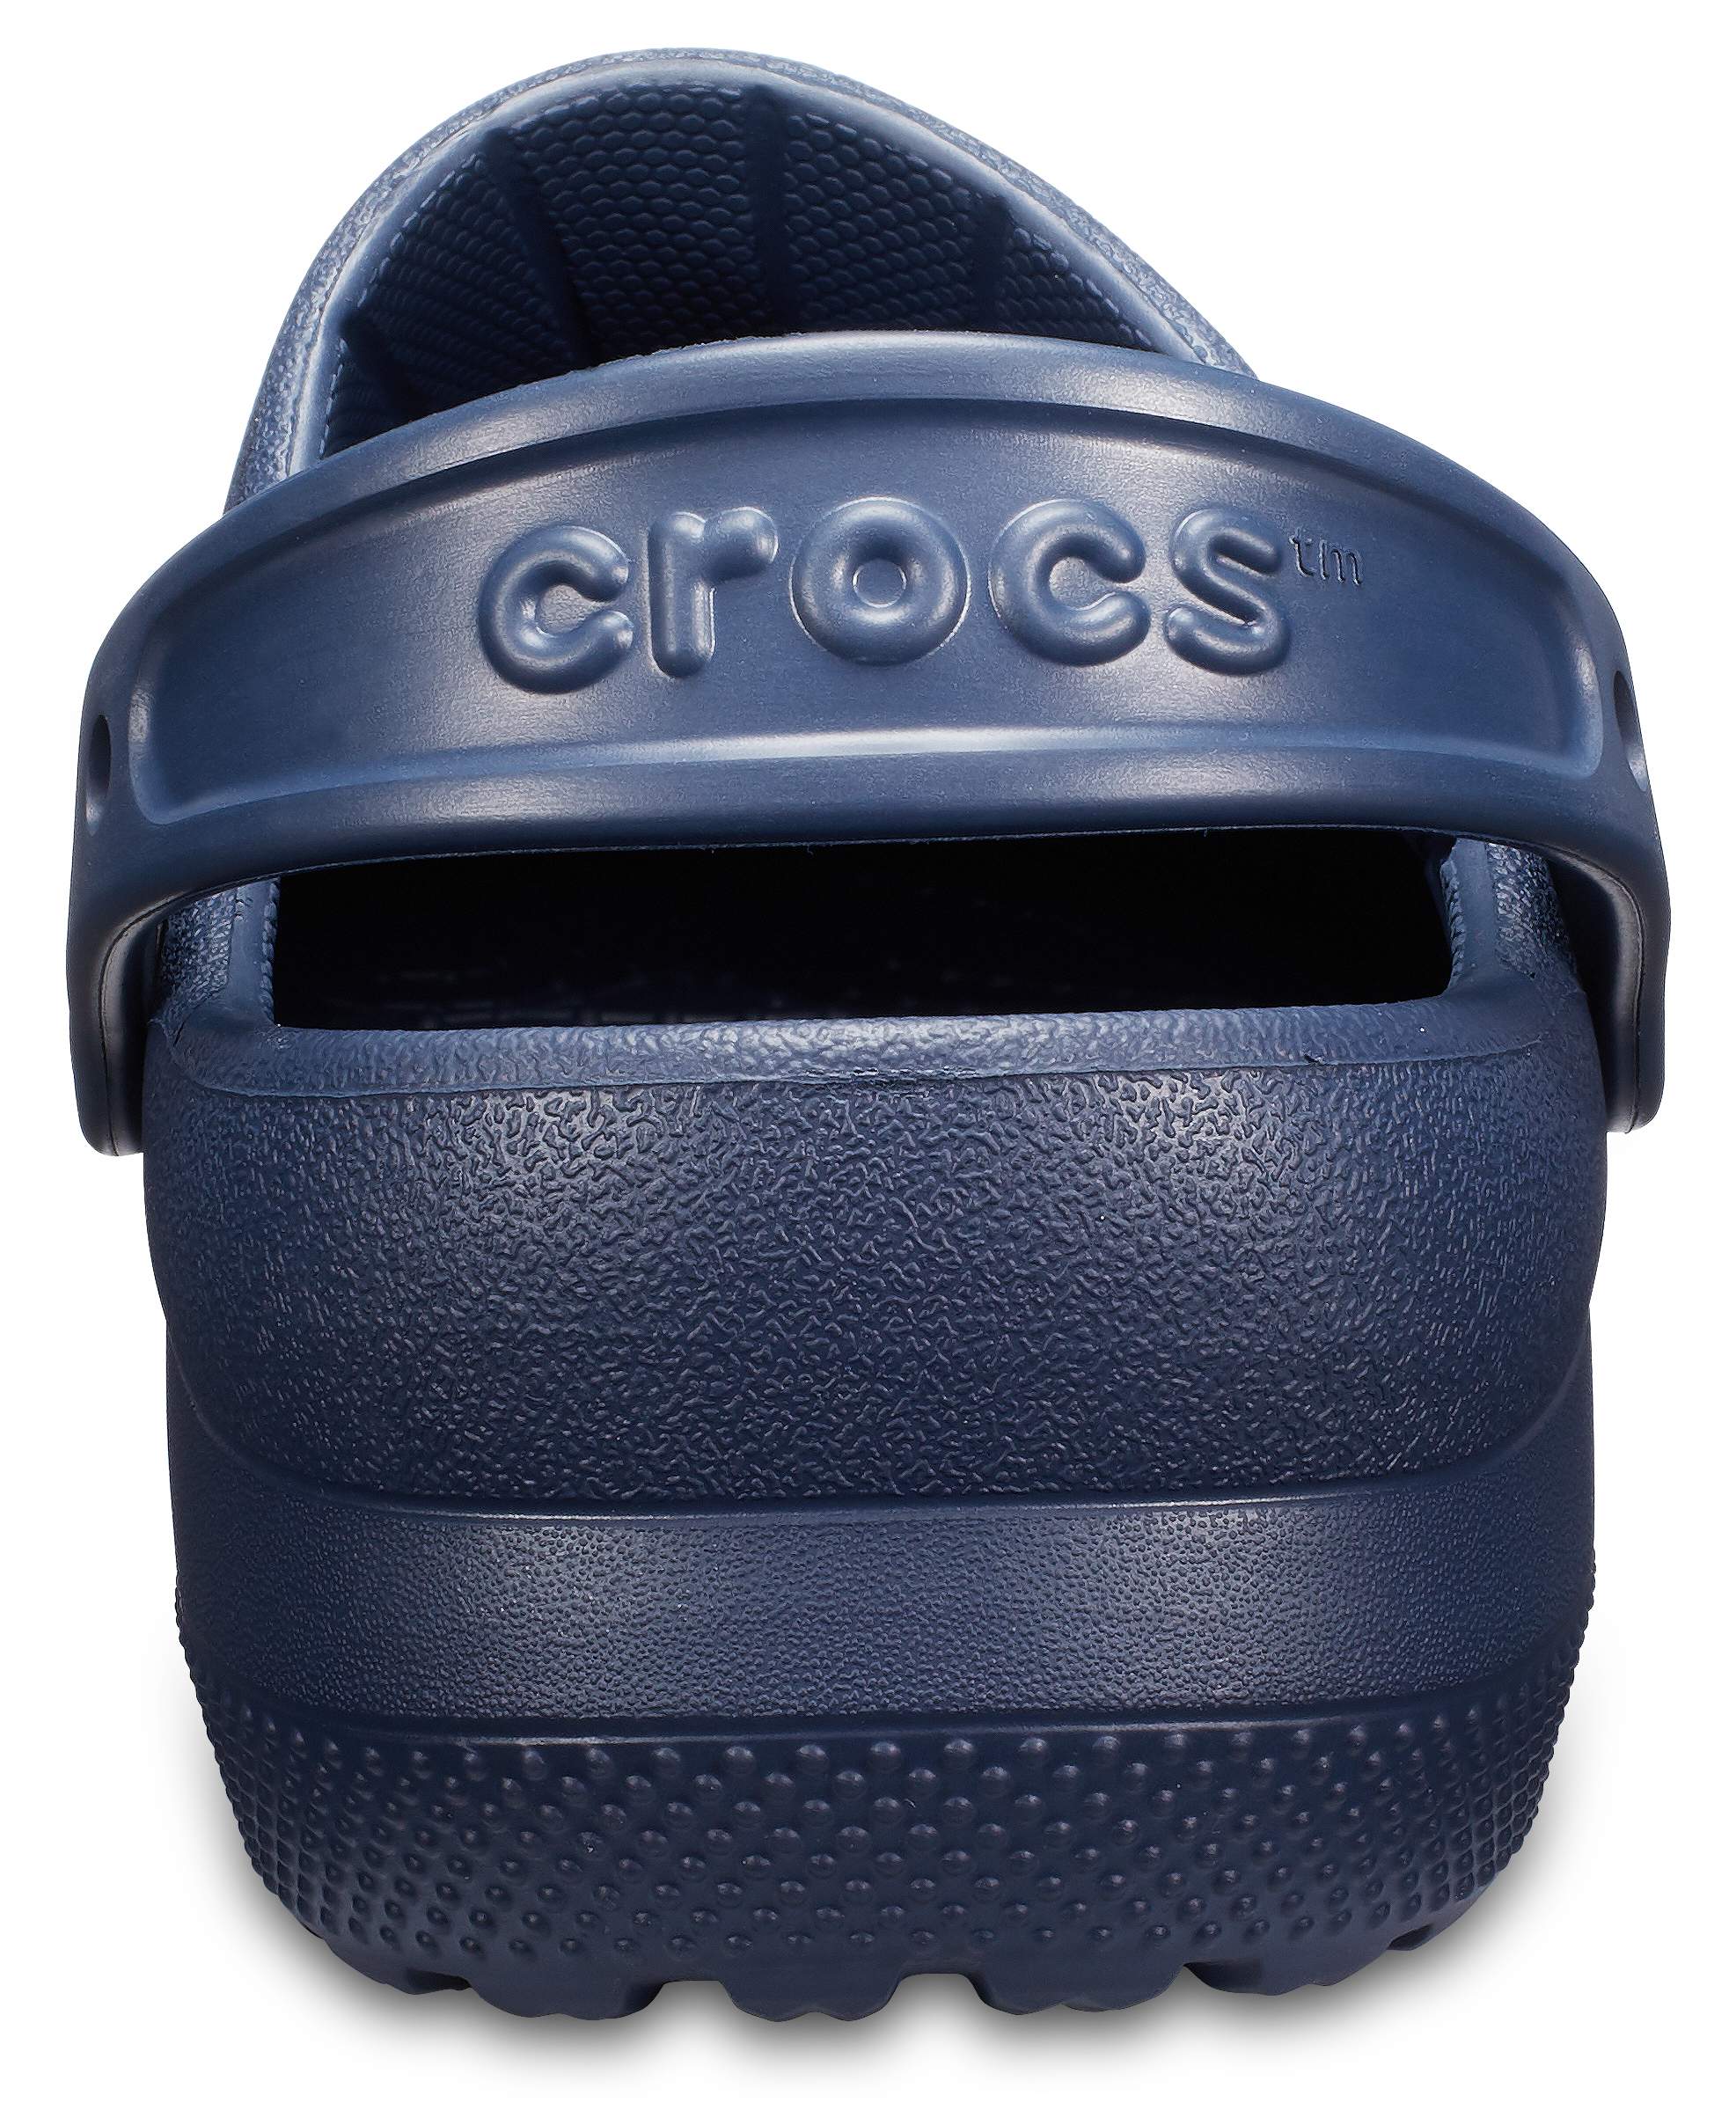 crocs specialist clog